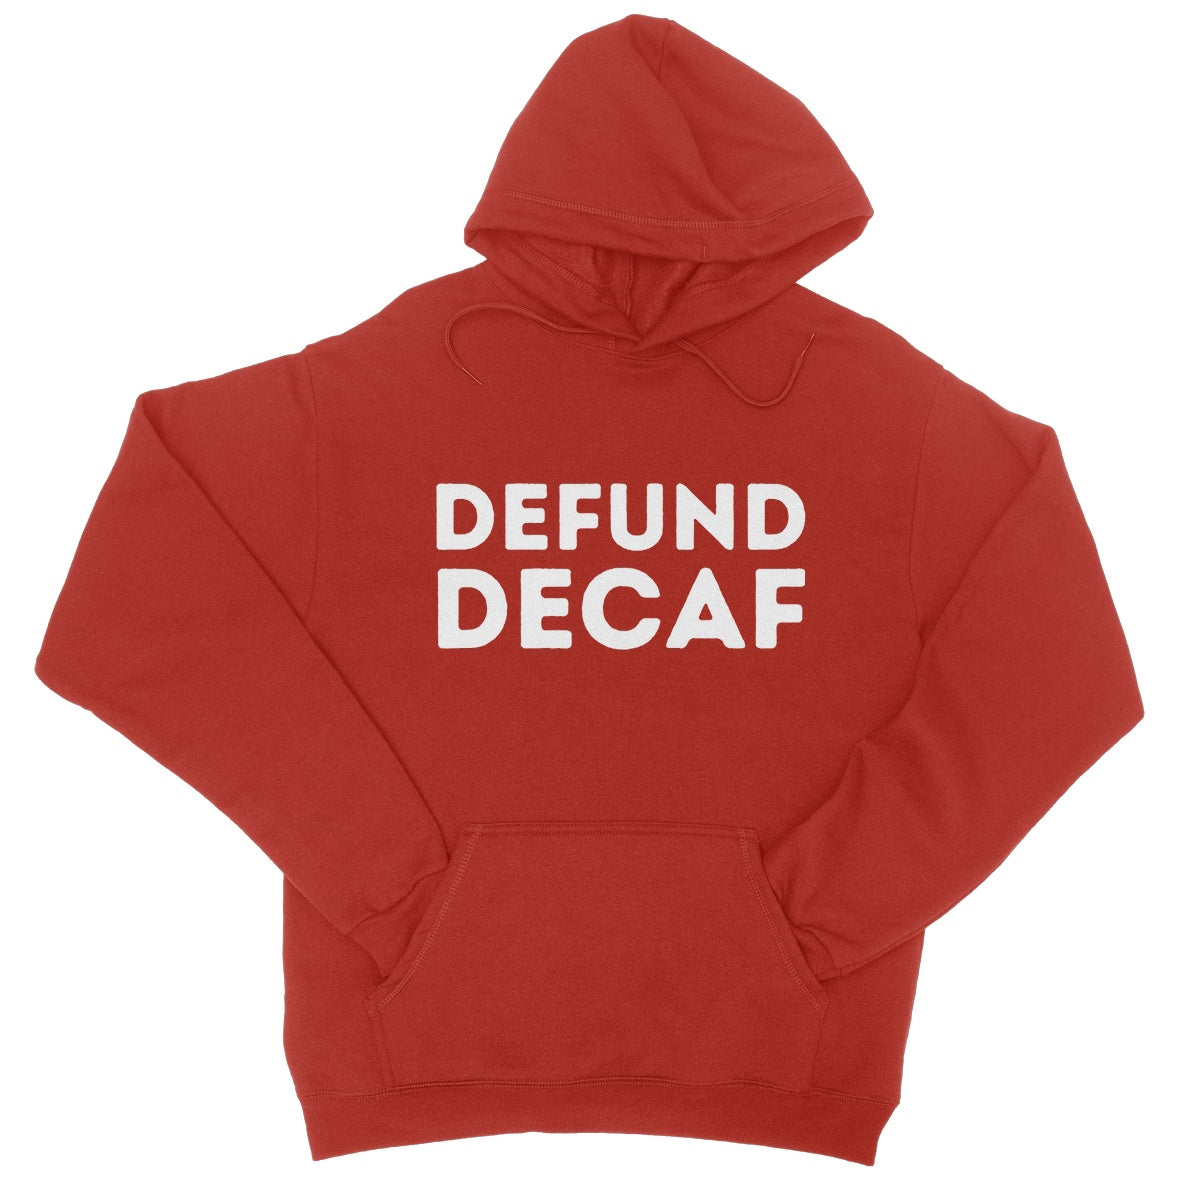 defund decaf hoodie red